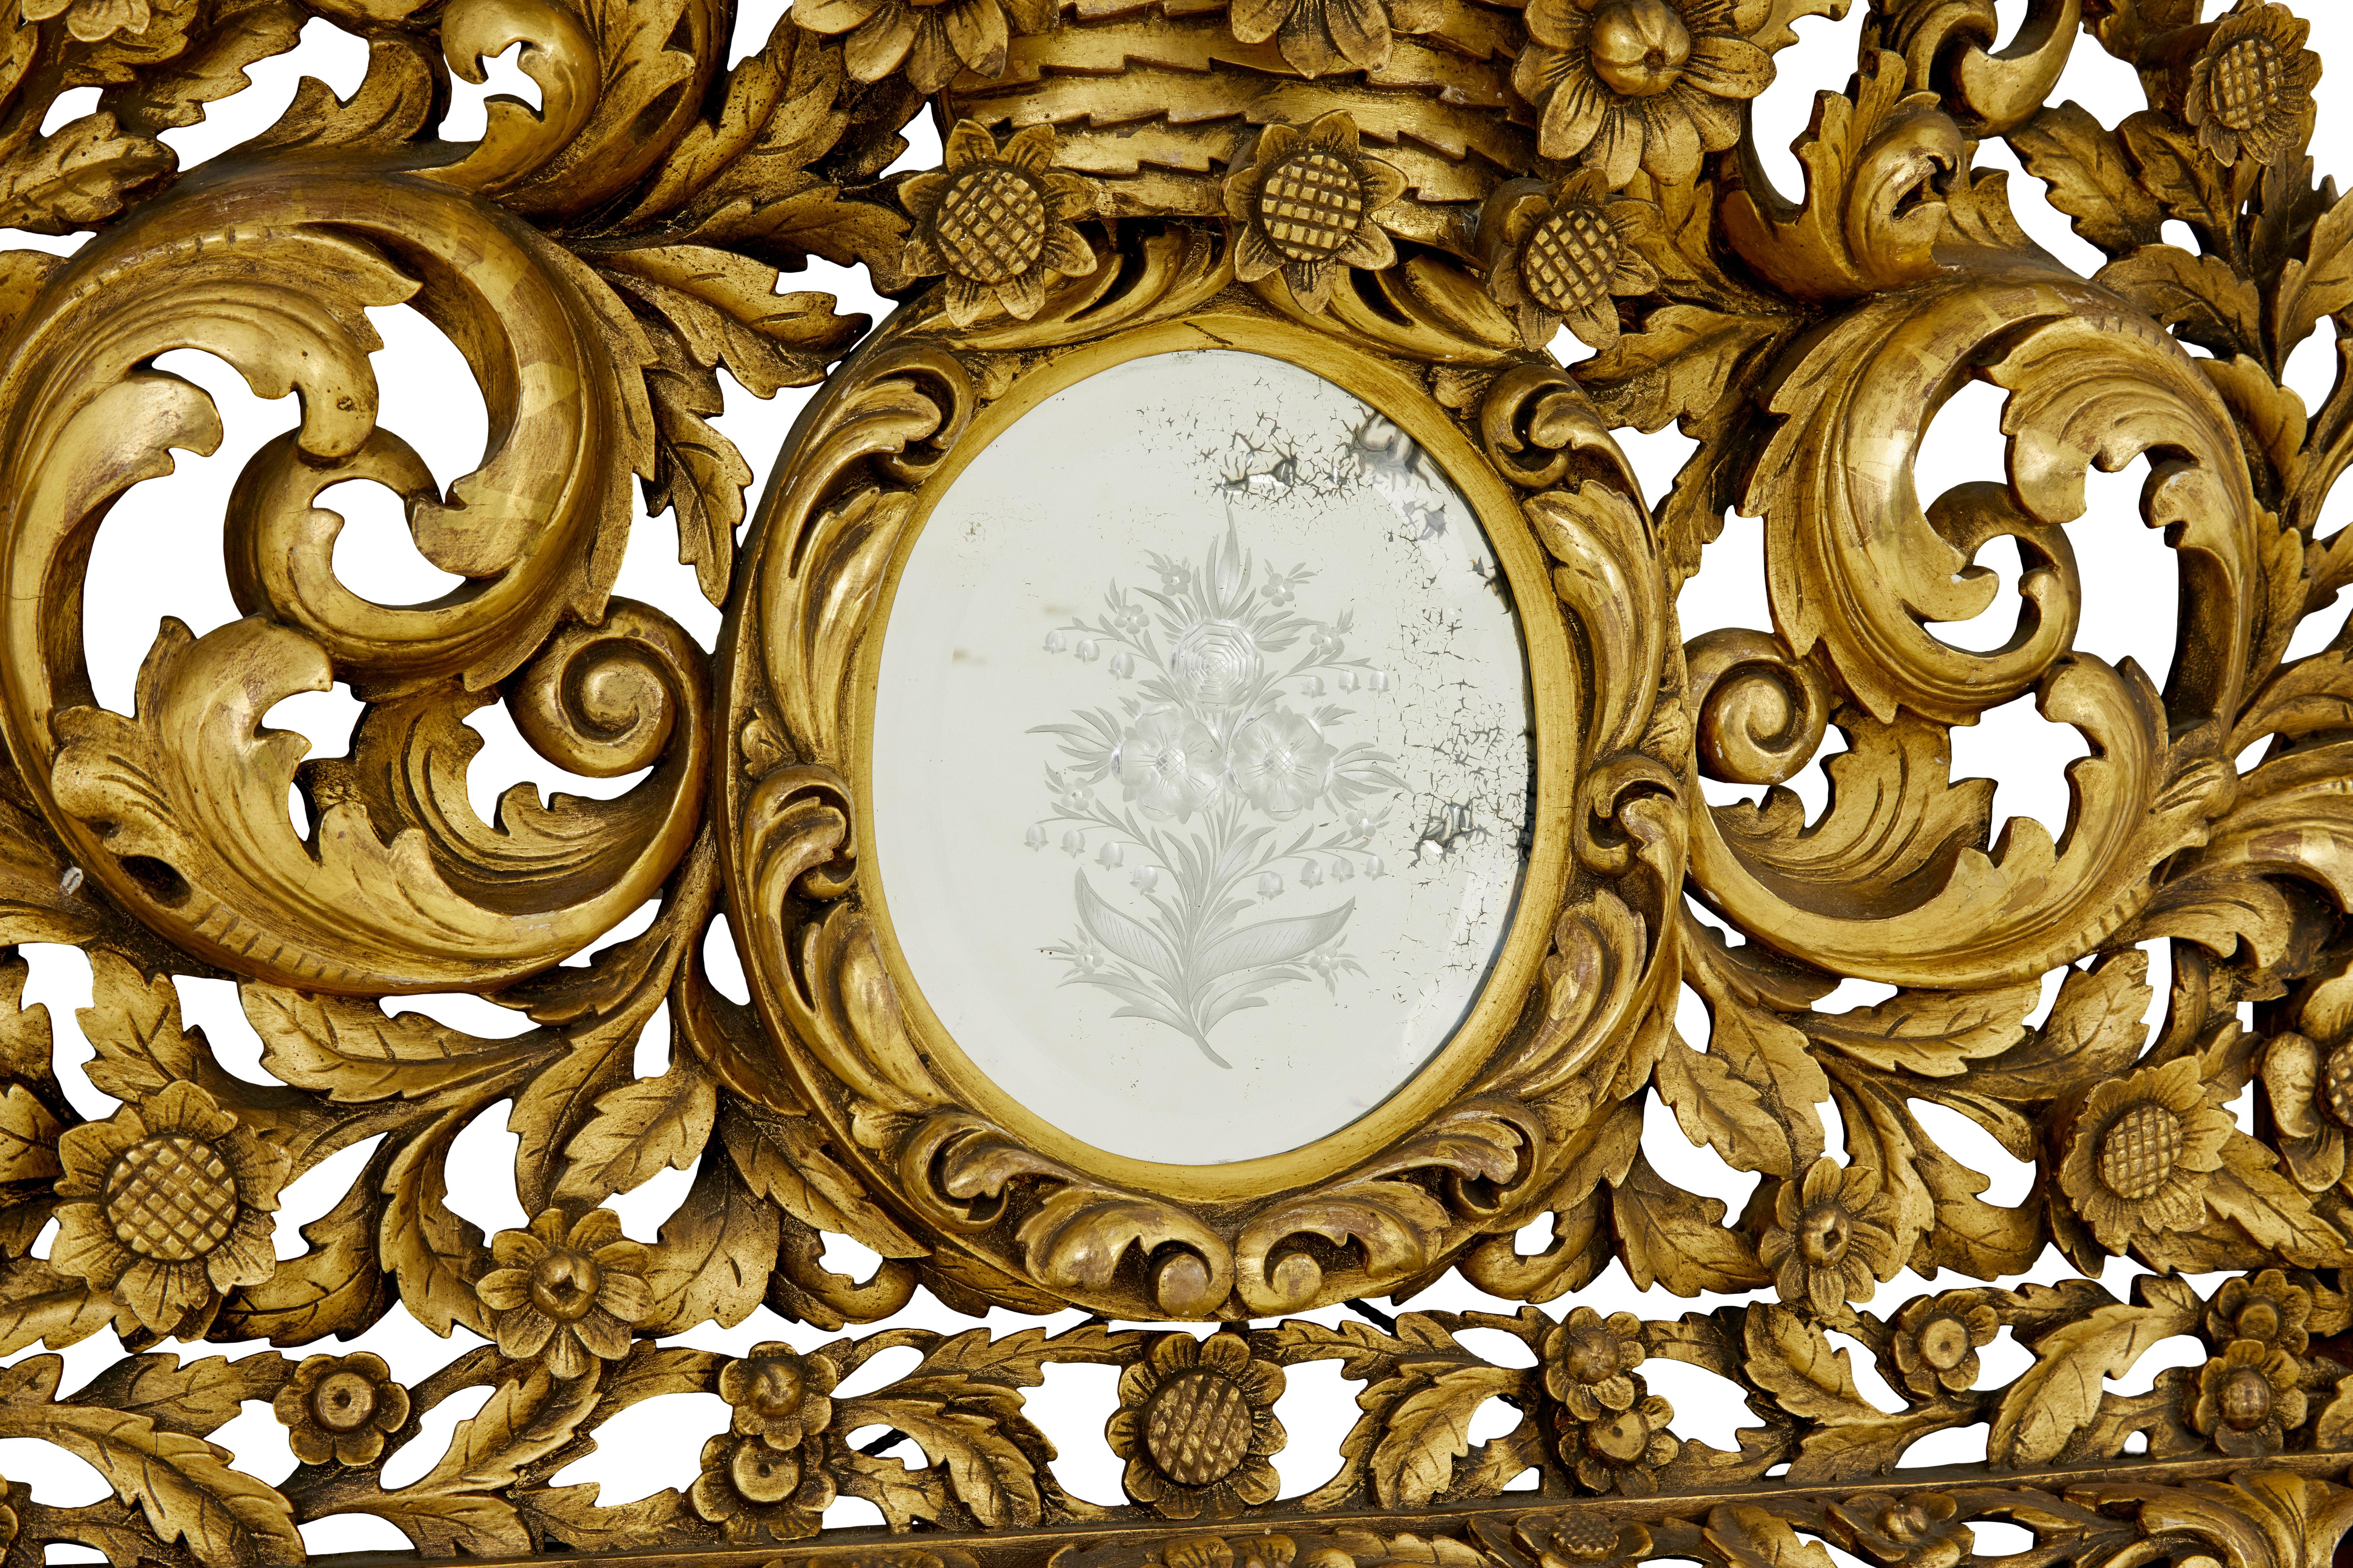 Grand miroir à coussin en bois sculpté du début du 20e siècle, d'influence baroque, circa 1905.

Superbe miroir à coussin d'influence baroque de grandes proportions.   Profondément sculpté de guirlandes et de feuilles d'acanthe.  Partie supérieure